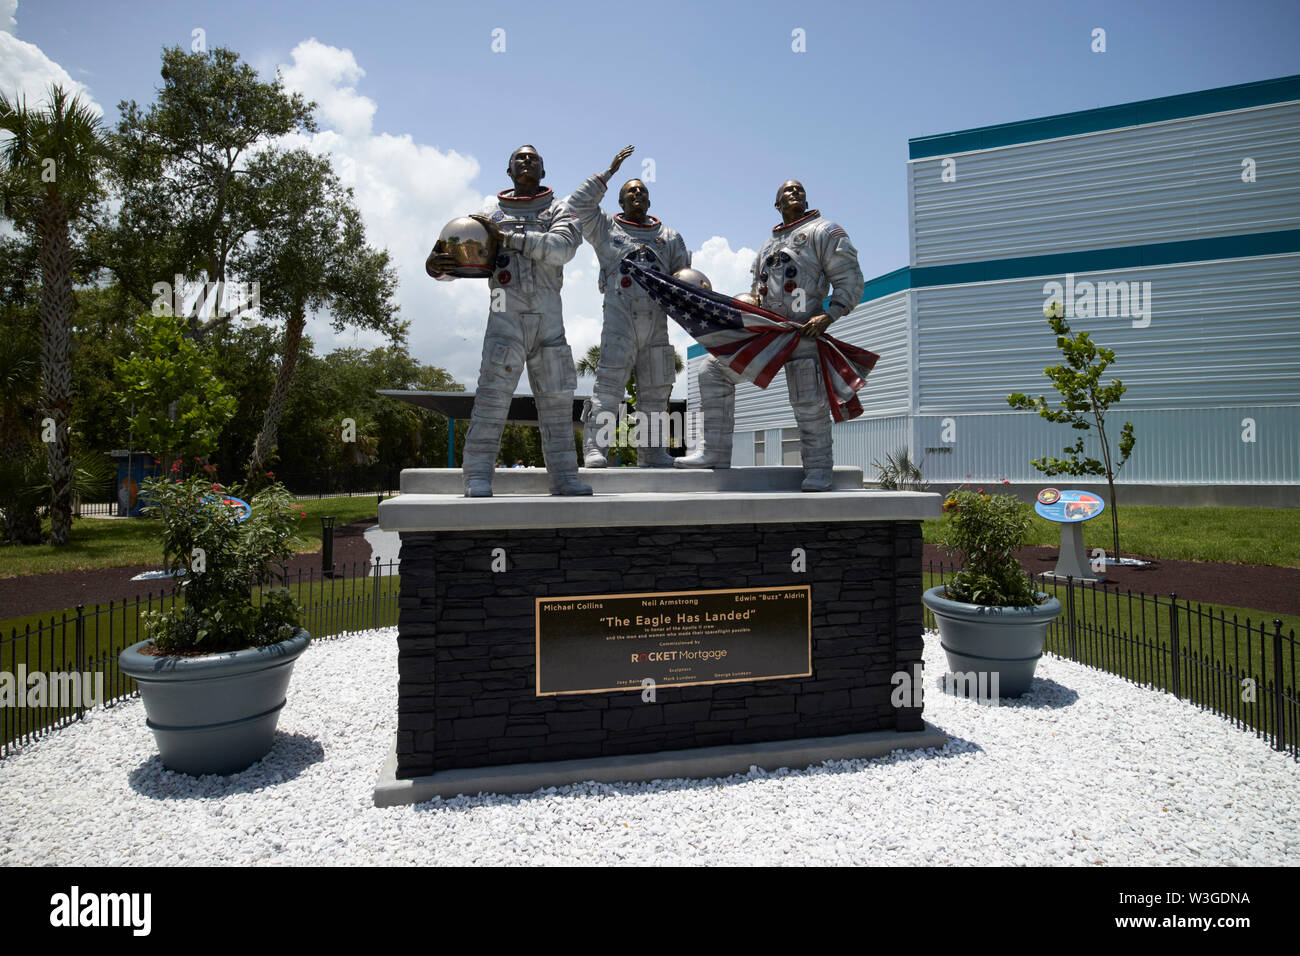 The Eagle has Landed sculpture de trois astronautes dans la nouvelle lune dans le jardin de l'arbre l'Apollo/Saturn 5 centre Centre spatial Kennedy en Floride USA sur le w Banque D'Images